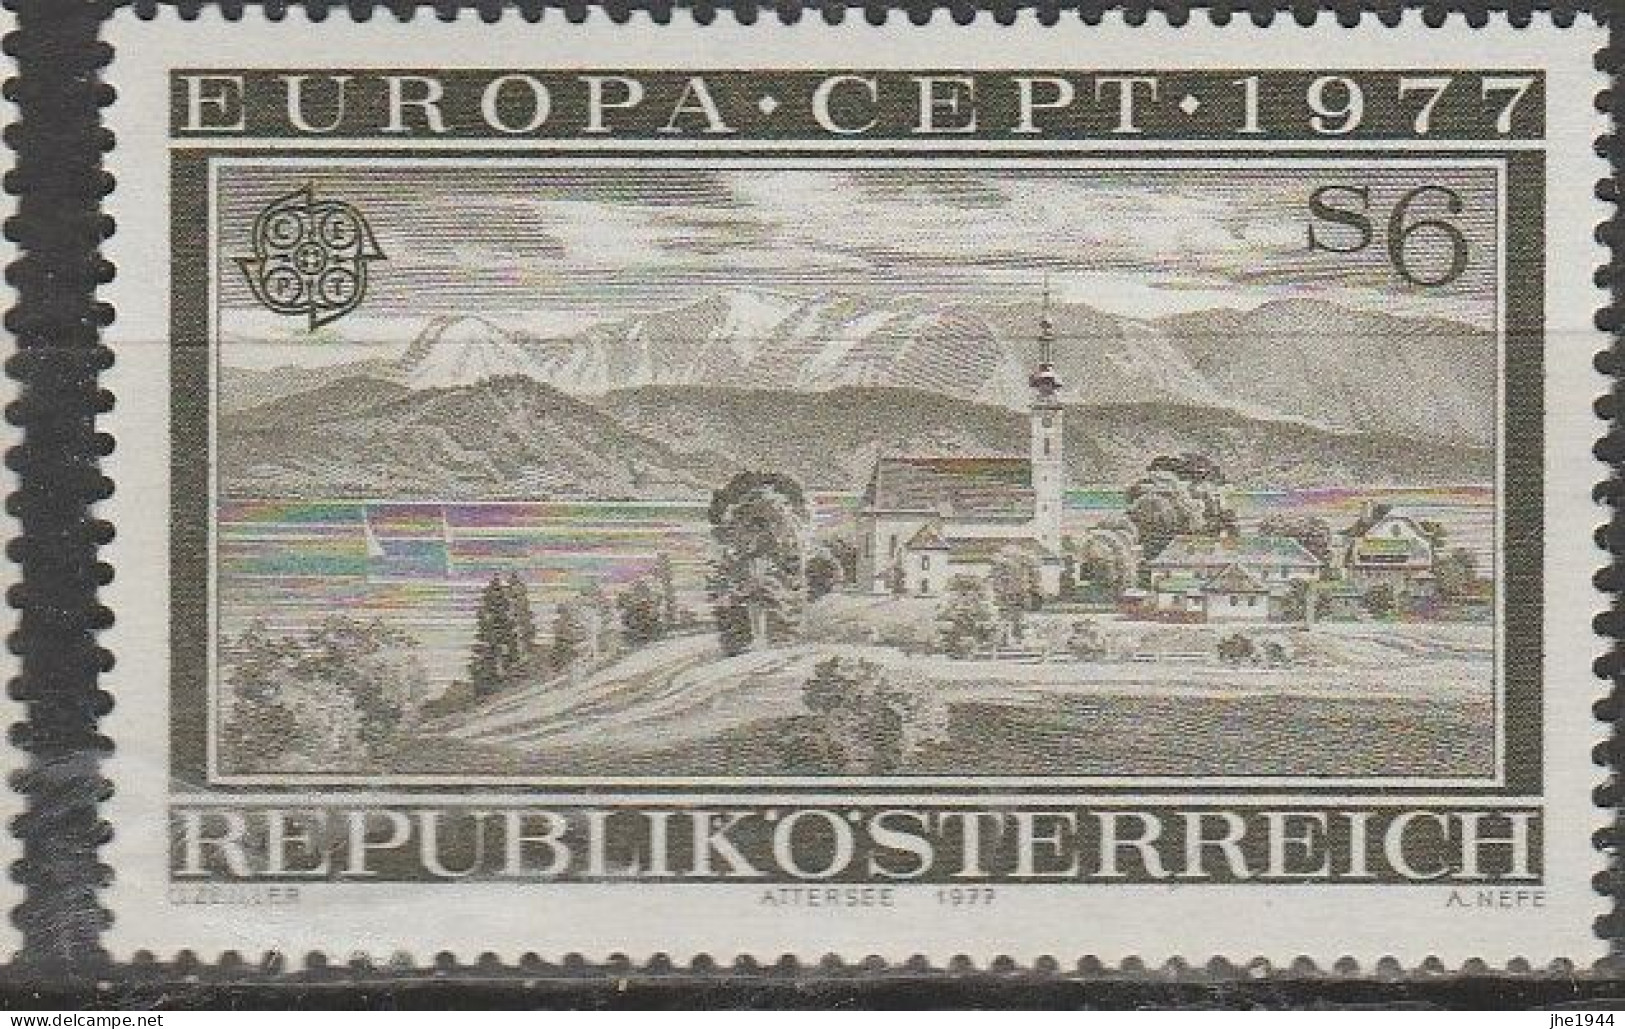 Autriche Europa 1977 N° 1383 ** Paysages - 1977